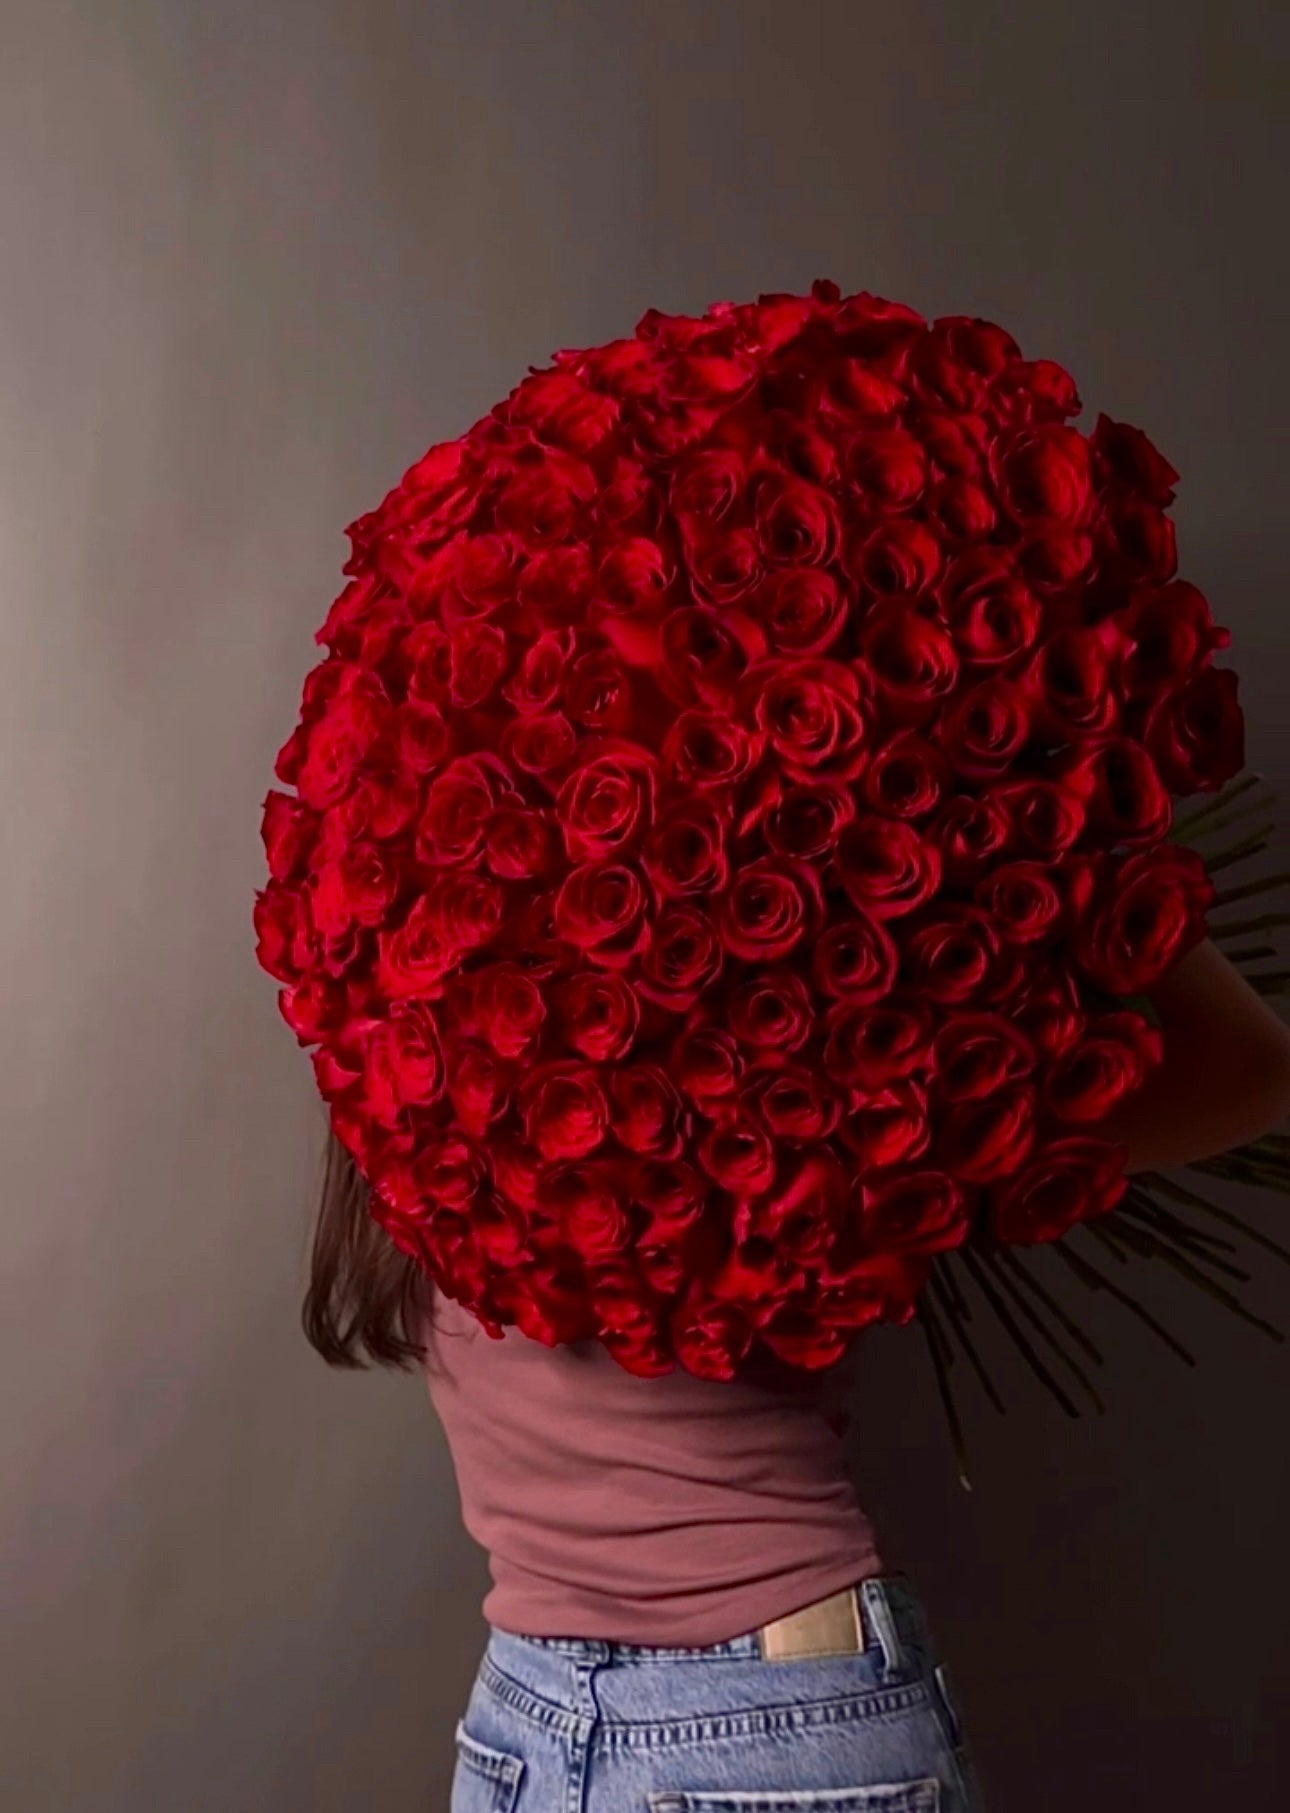 Passionate Affair - 200 beautiful red premium roses